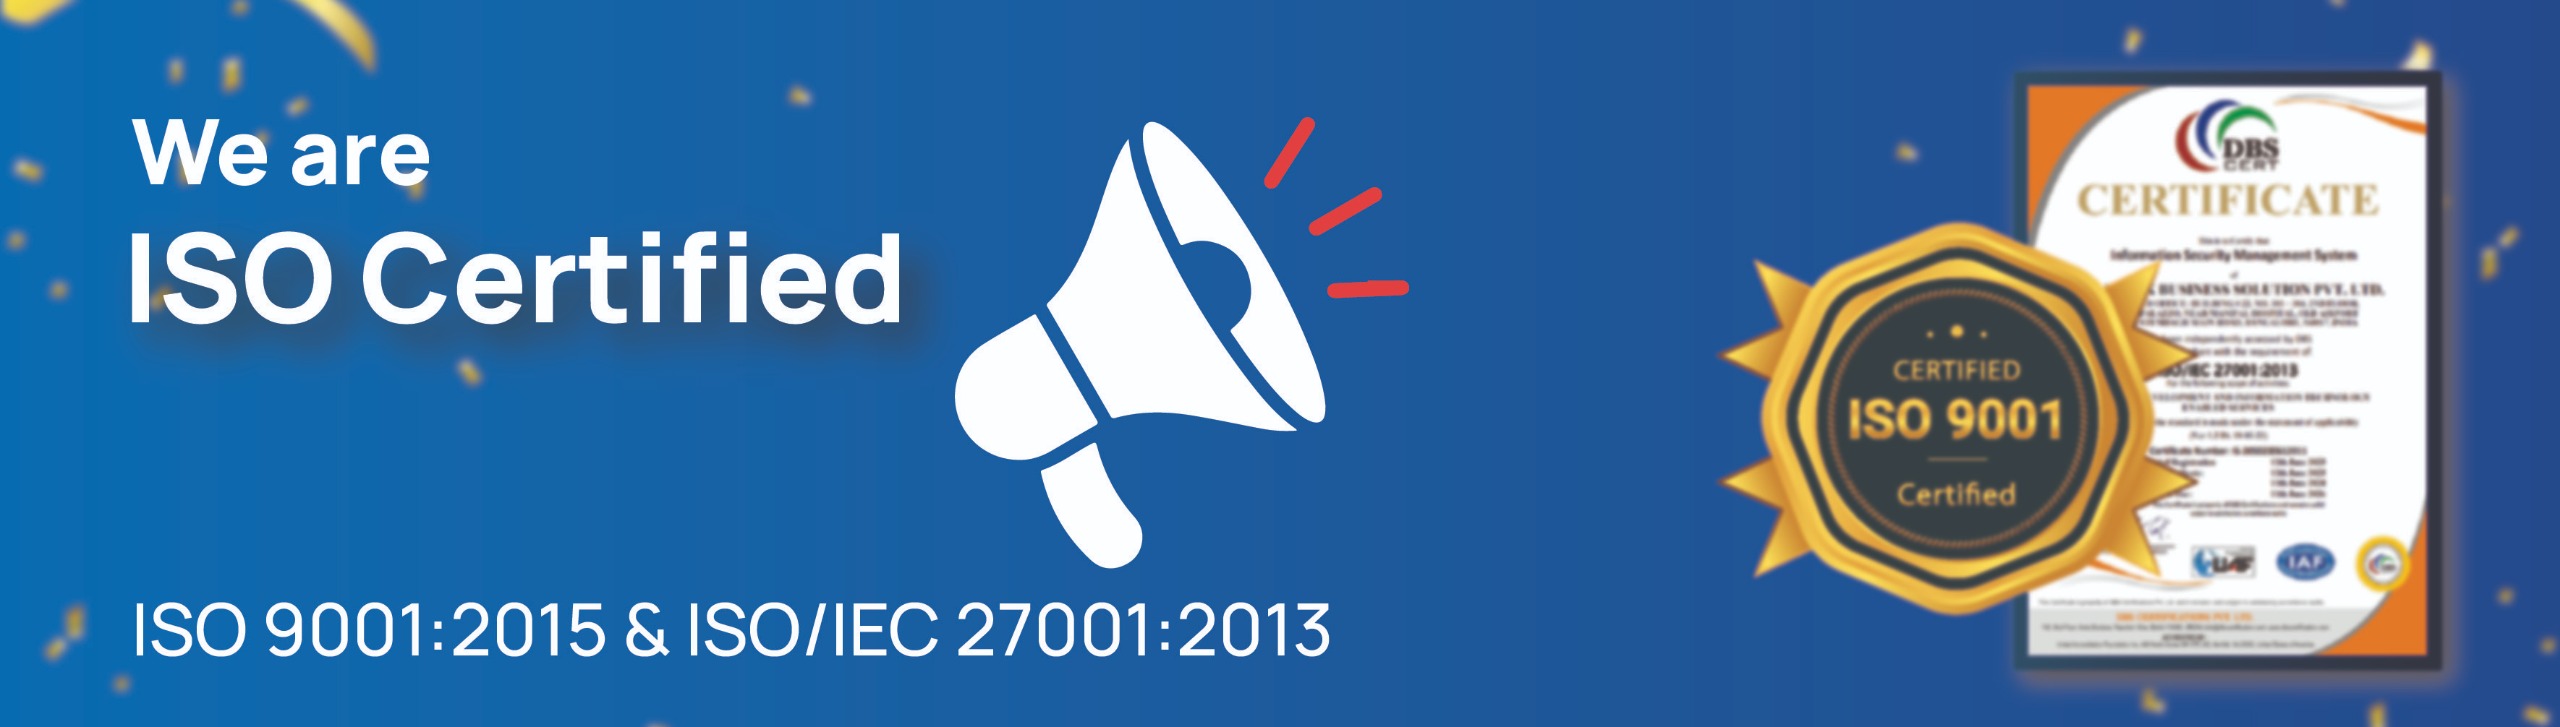 ISO 9001:2015 & ISO/IEC 27001:2013